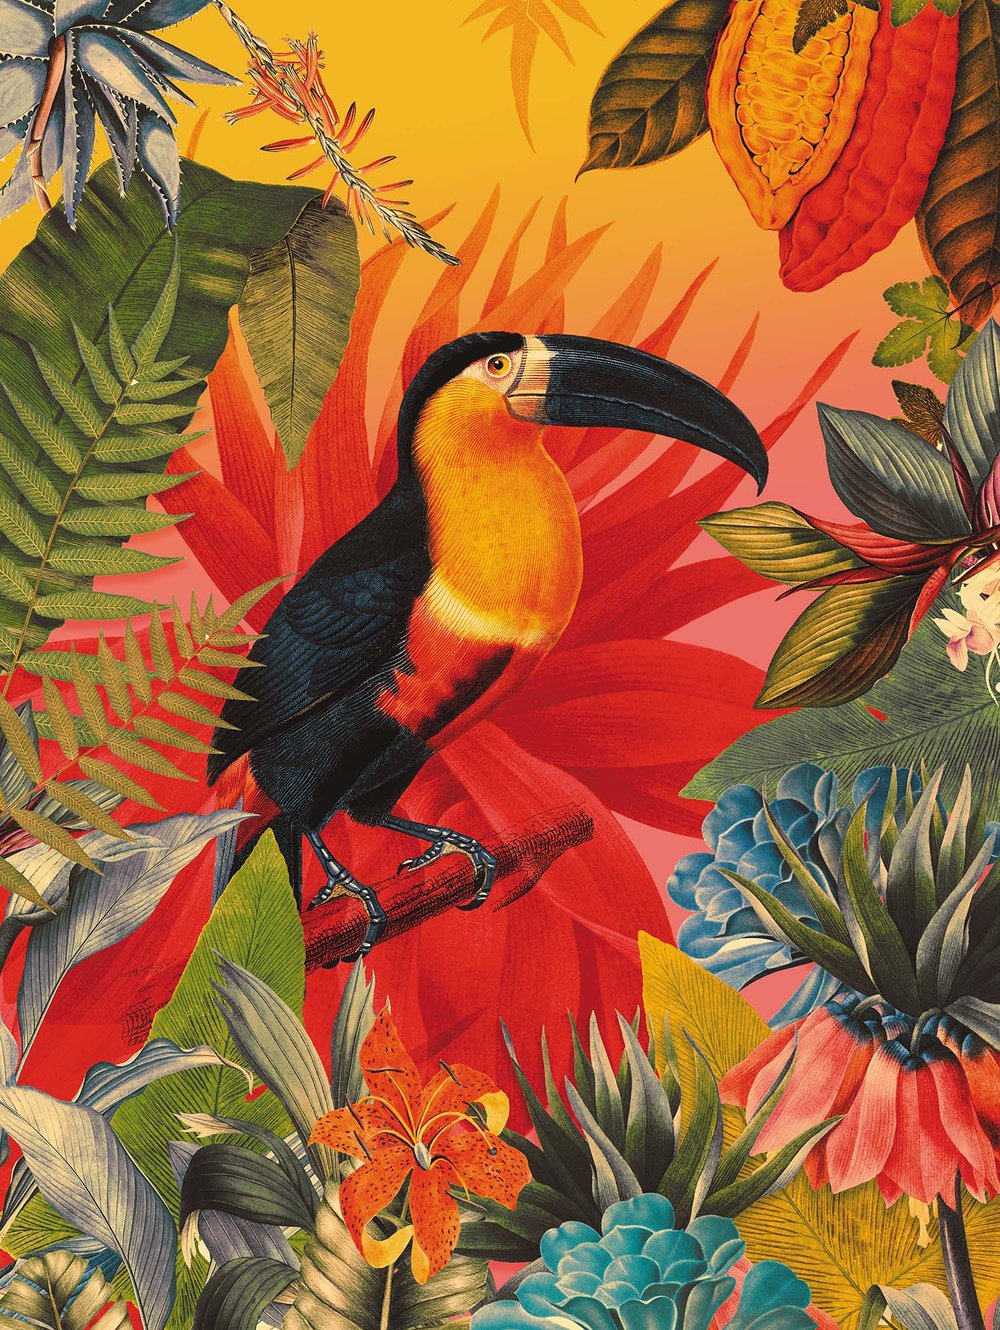 L'autocollant mural Prunes et oiseau, Mélanie Foster Illustrations